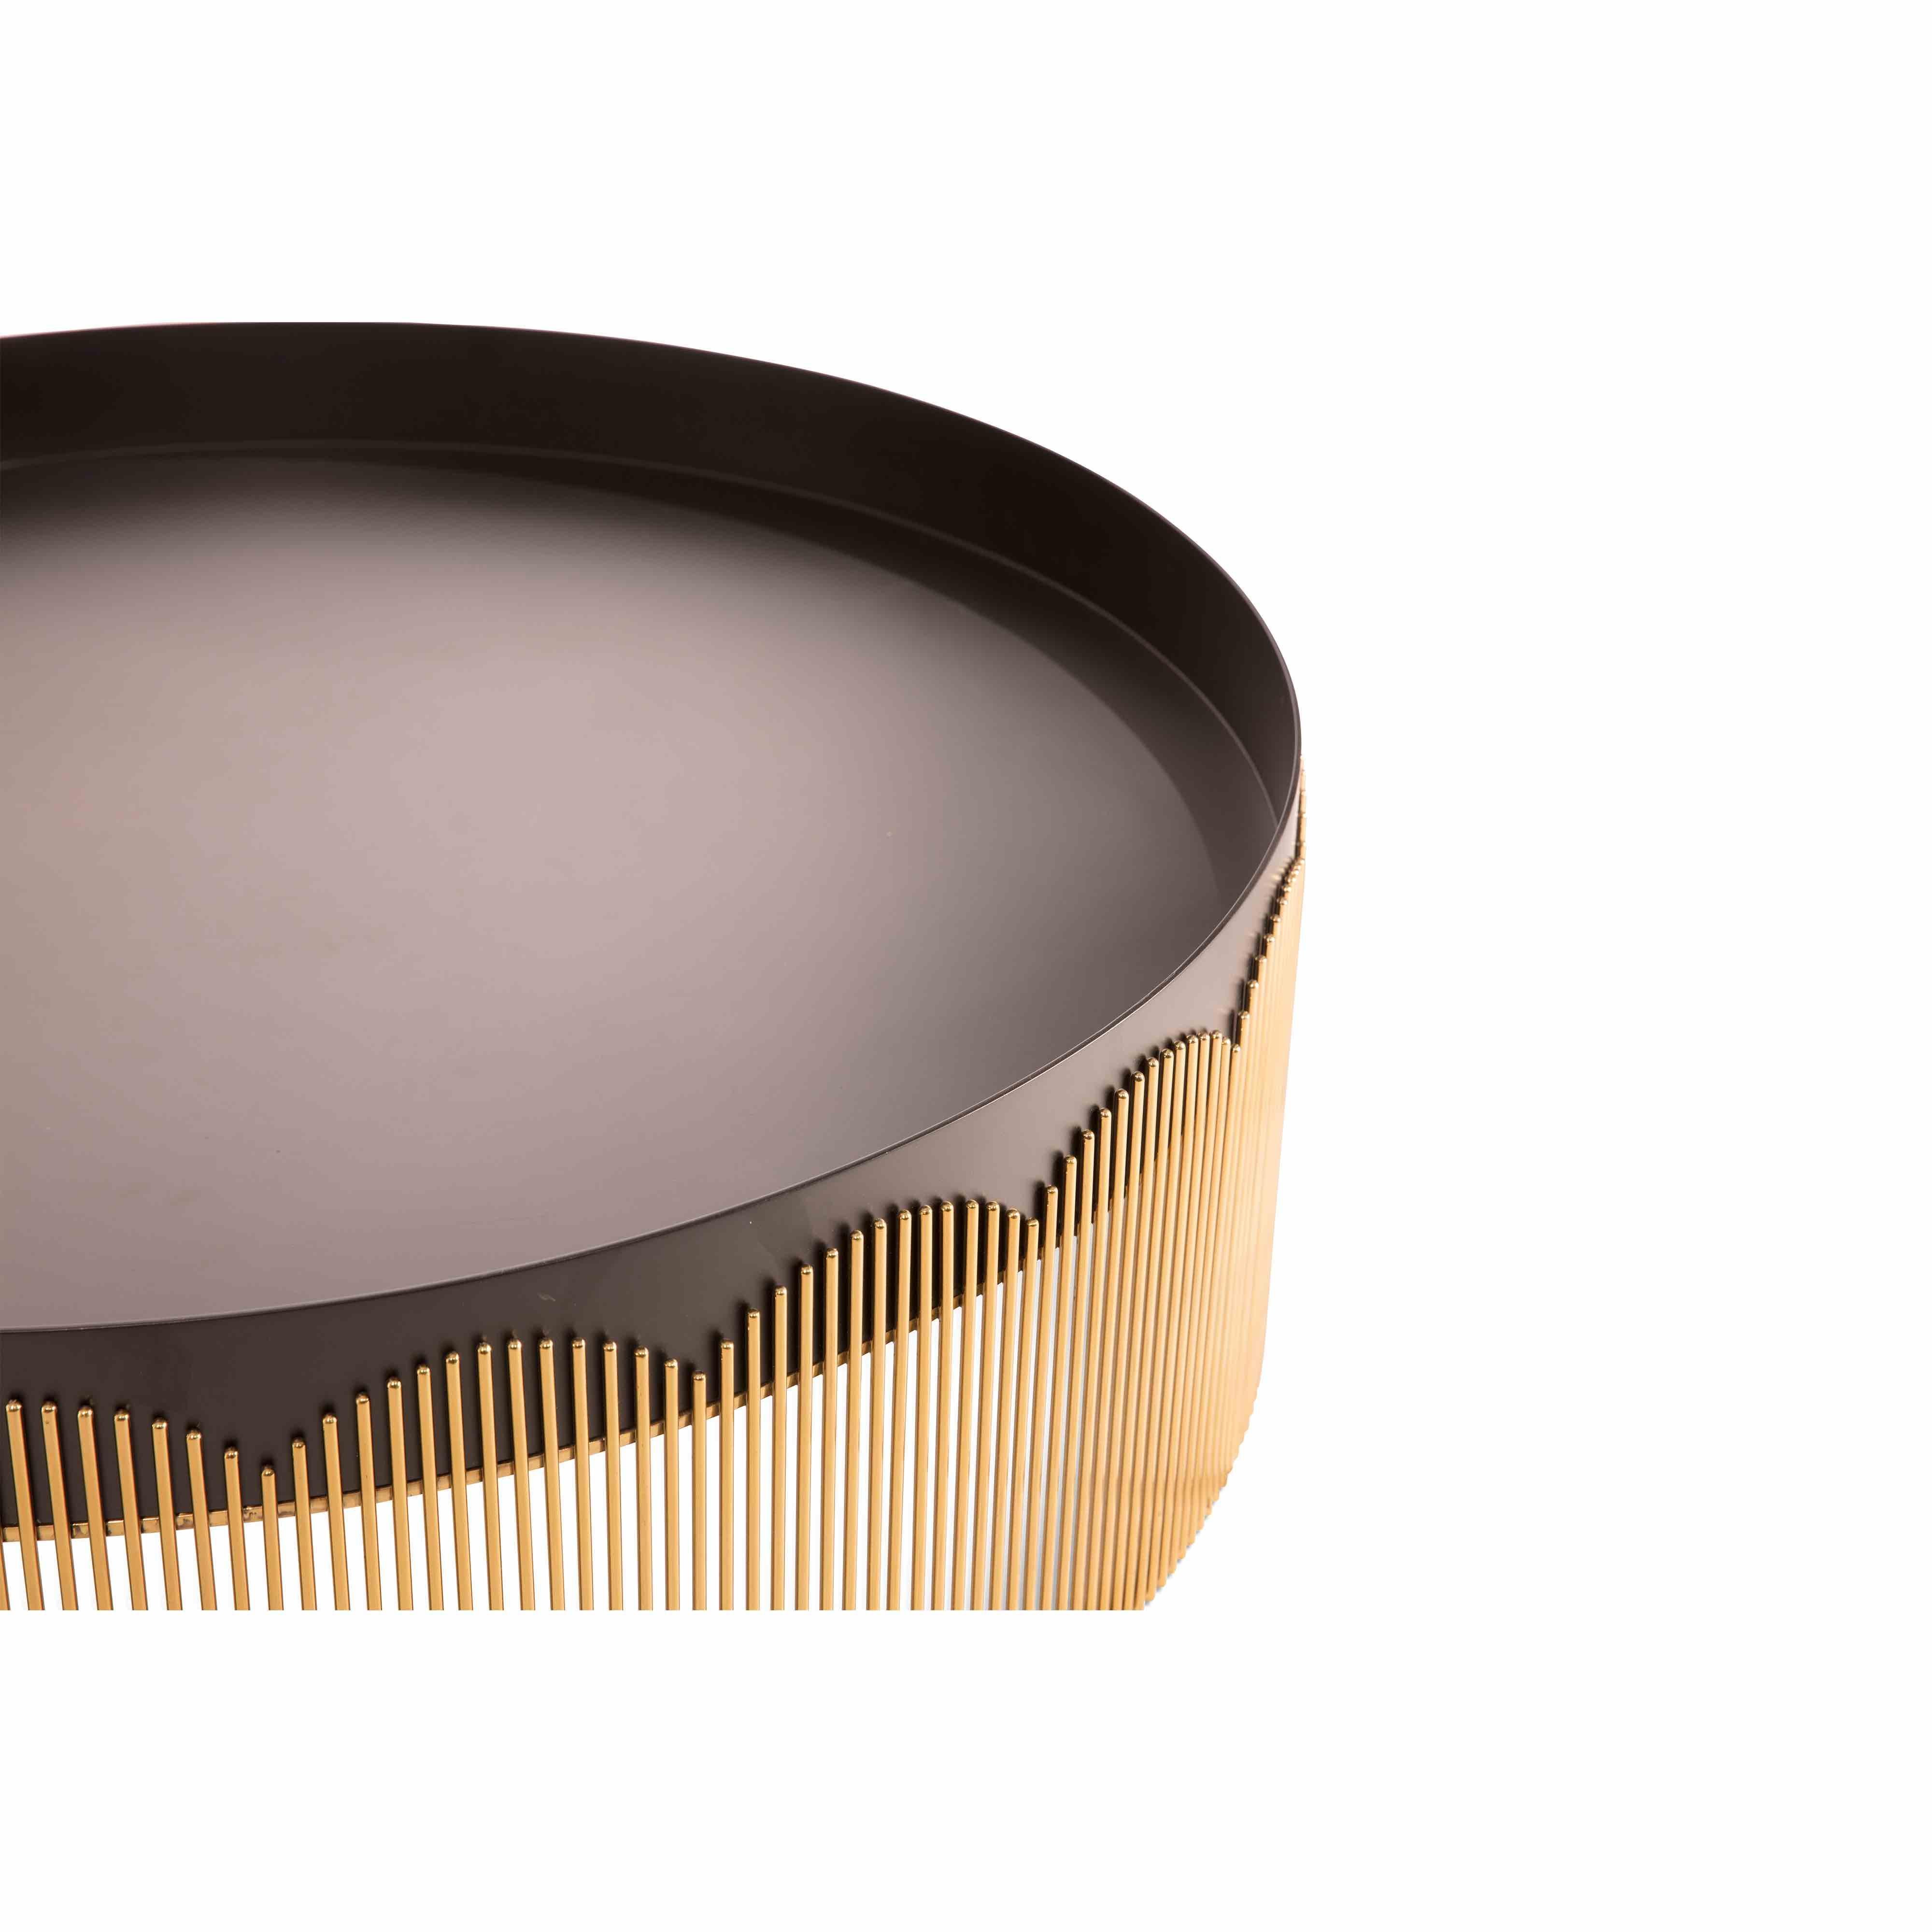 Der Couchtisch Strings aus goldfarbenem und schwarzem Metall von Nika Zupanc ist elegant mit seinem spitzenartigen Untergestell aus goldfarbenem Stahl und der mattschwarzen Tischplatte.

Das Wort Saiten weckt in uns die Vorstellung von